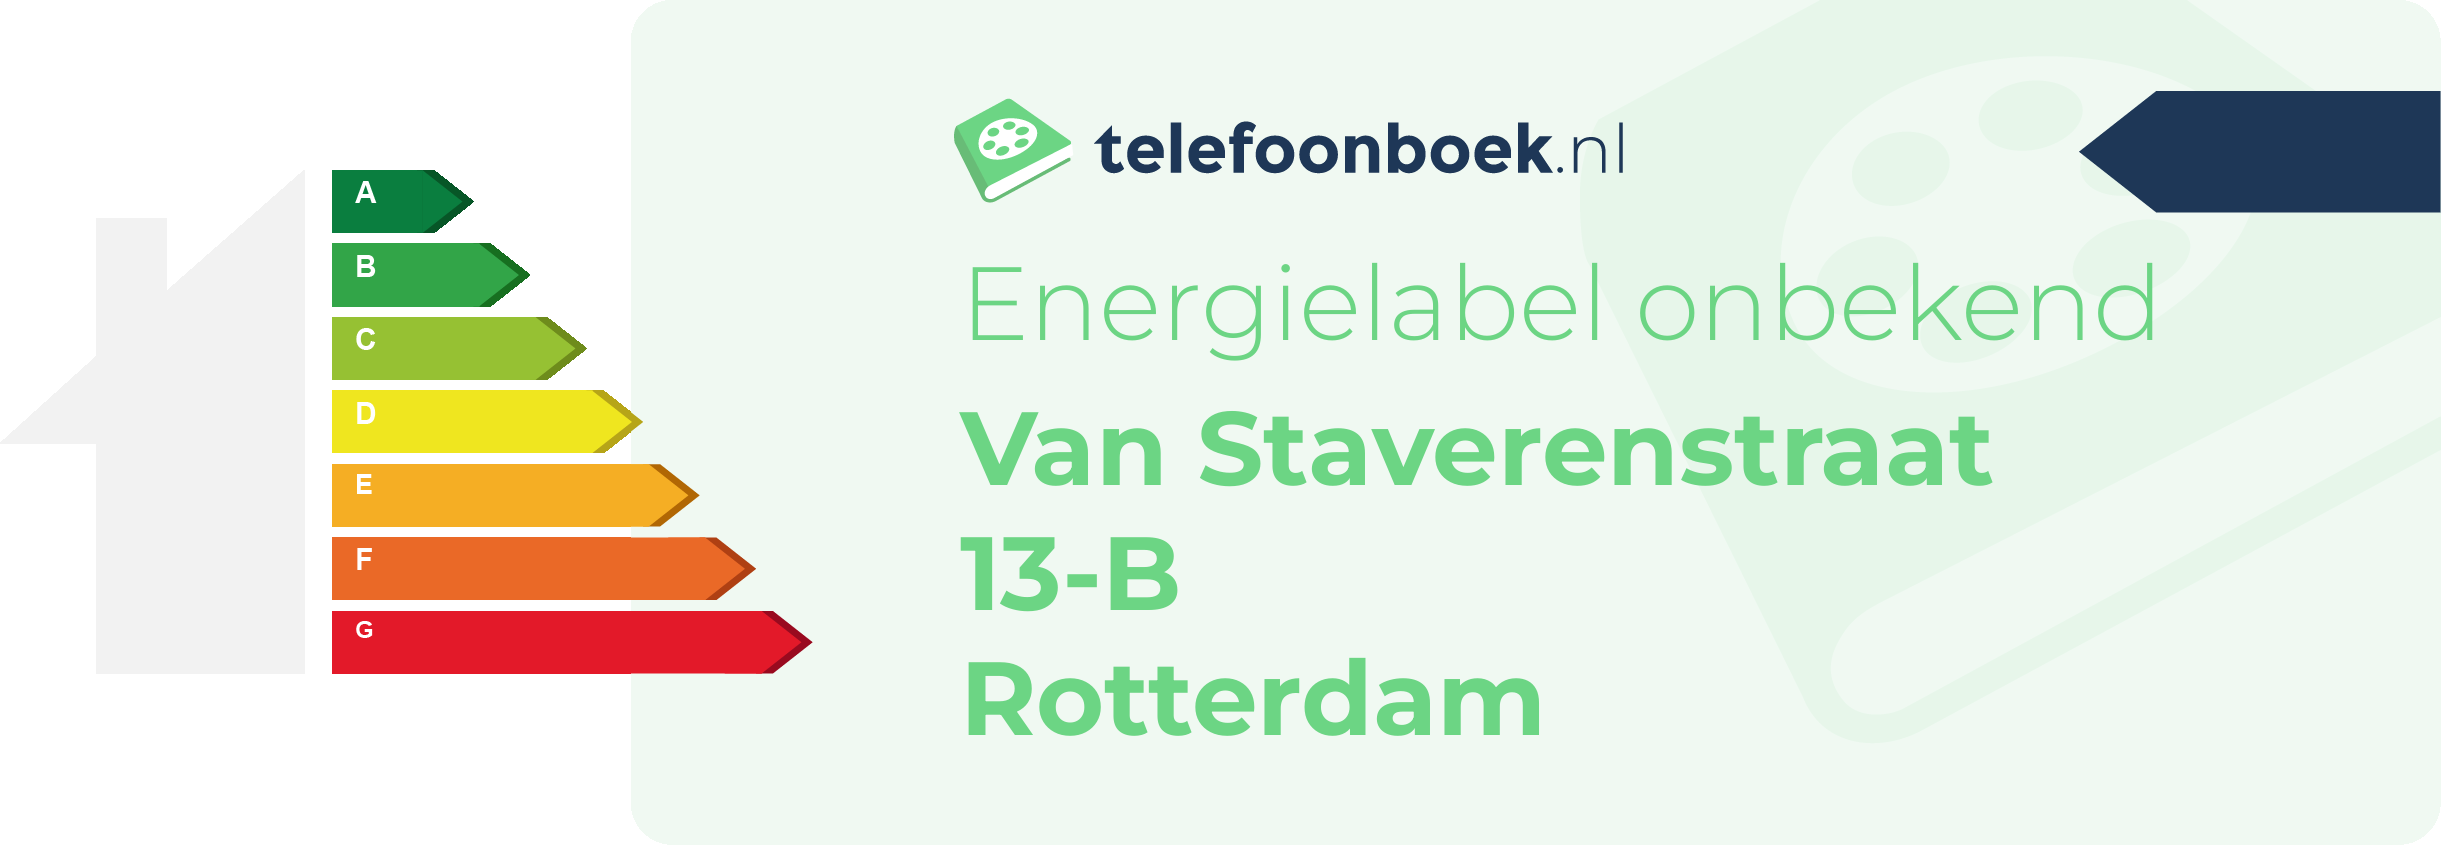 Energielabel Van Staverenstraat 13-B Rotterdam